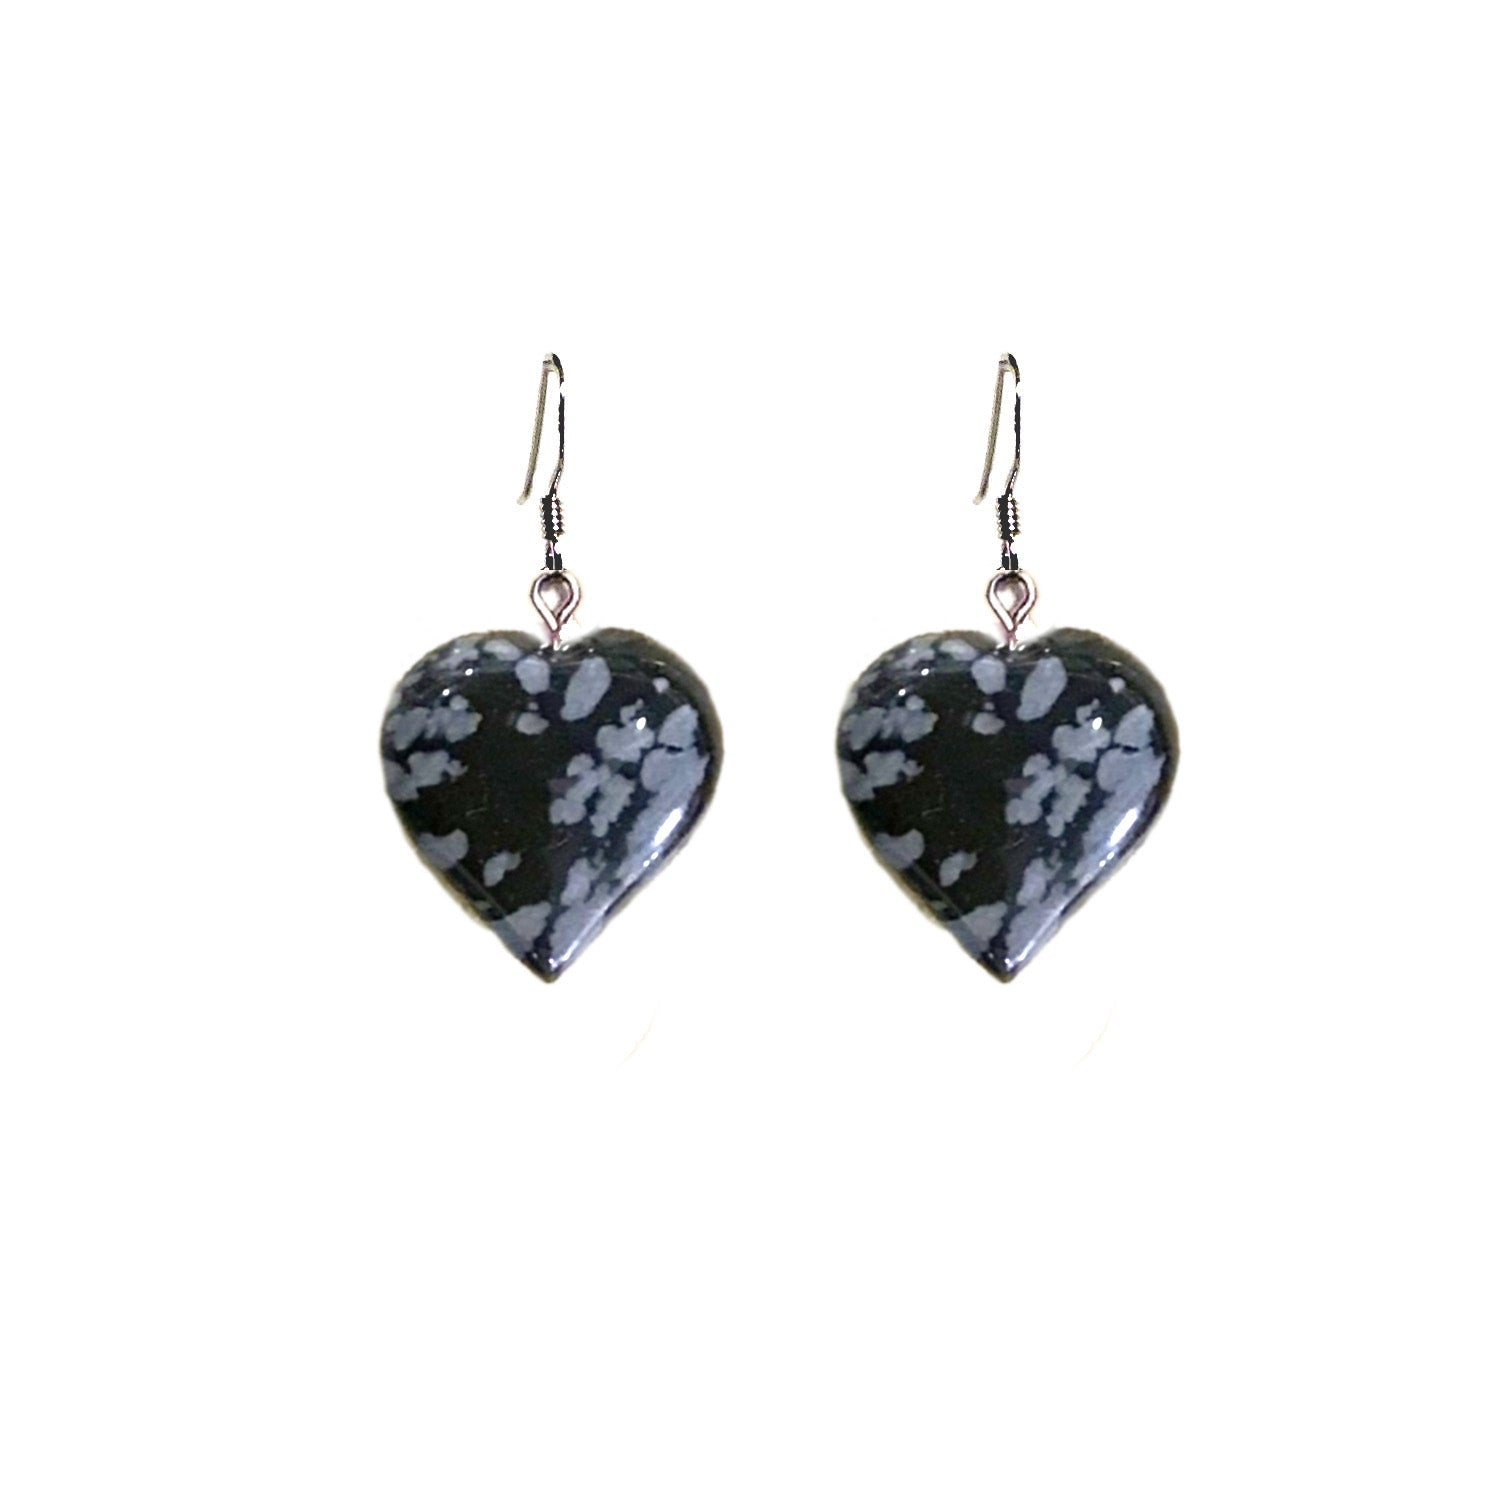 Snowflake Obsidian Drop Earrings, Heart Sterling Silver Drop Earrings, Gemstone Earrings | by nlanlaVictory-0